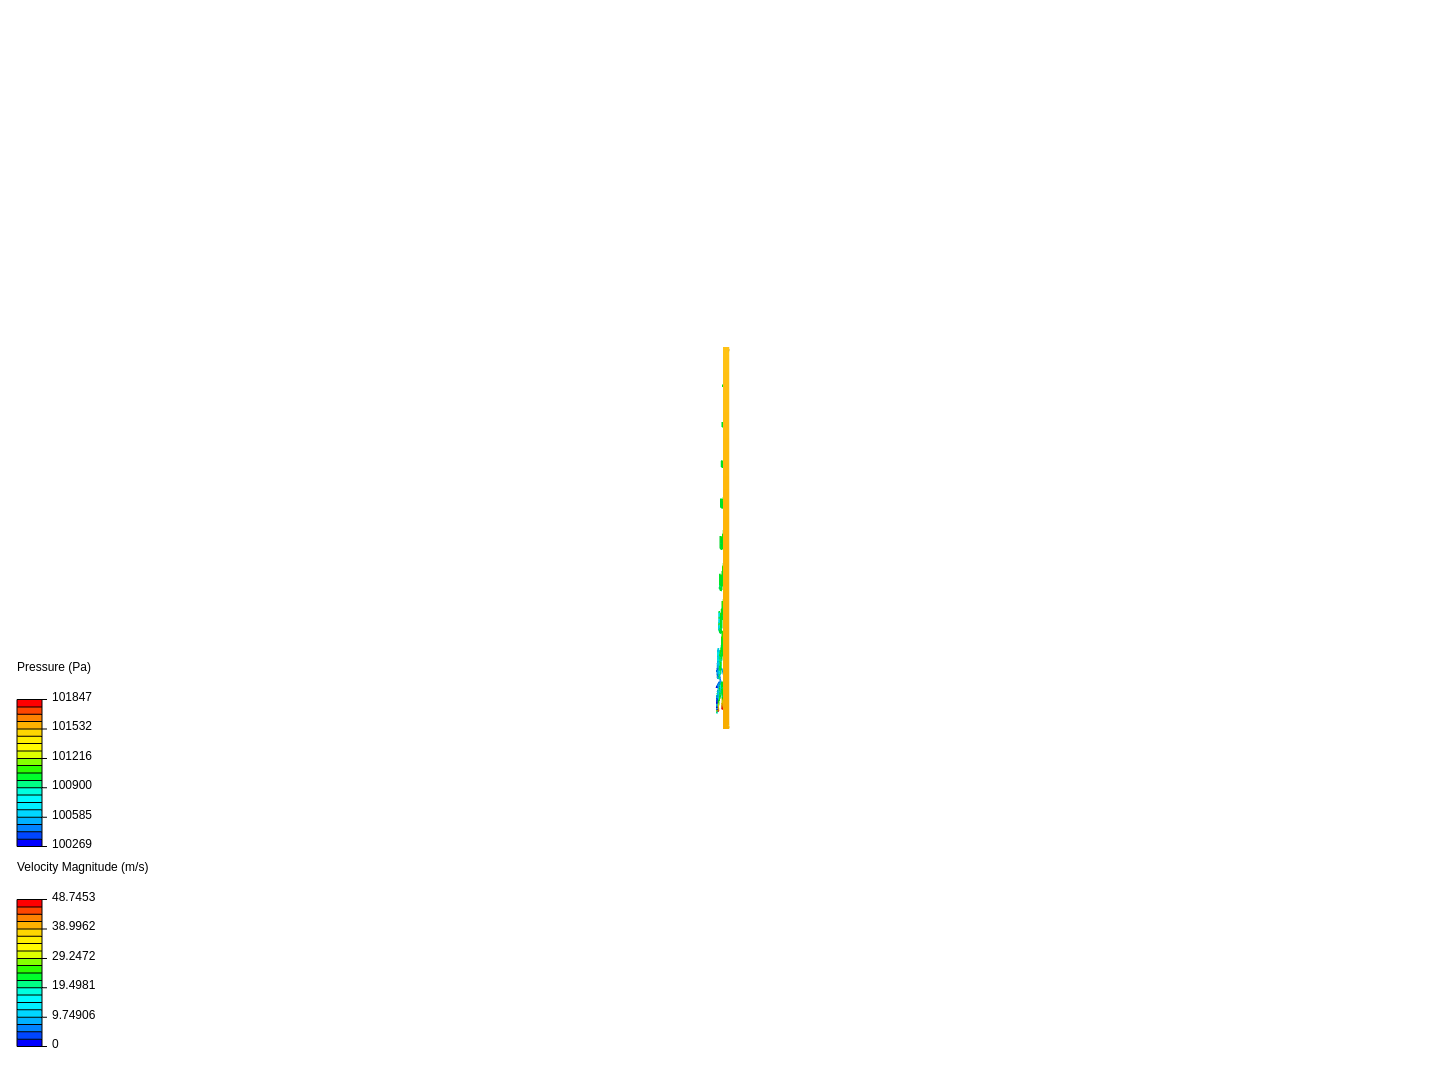 S1223_CFD_Analysis image